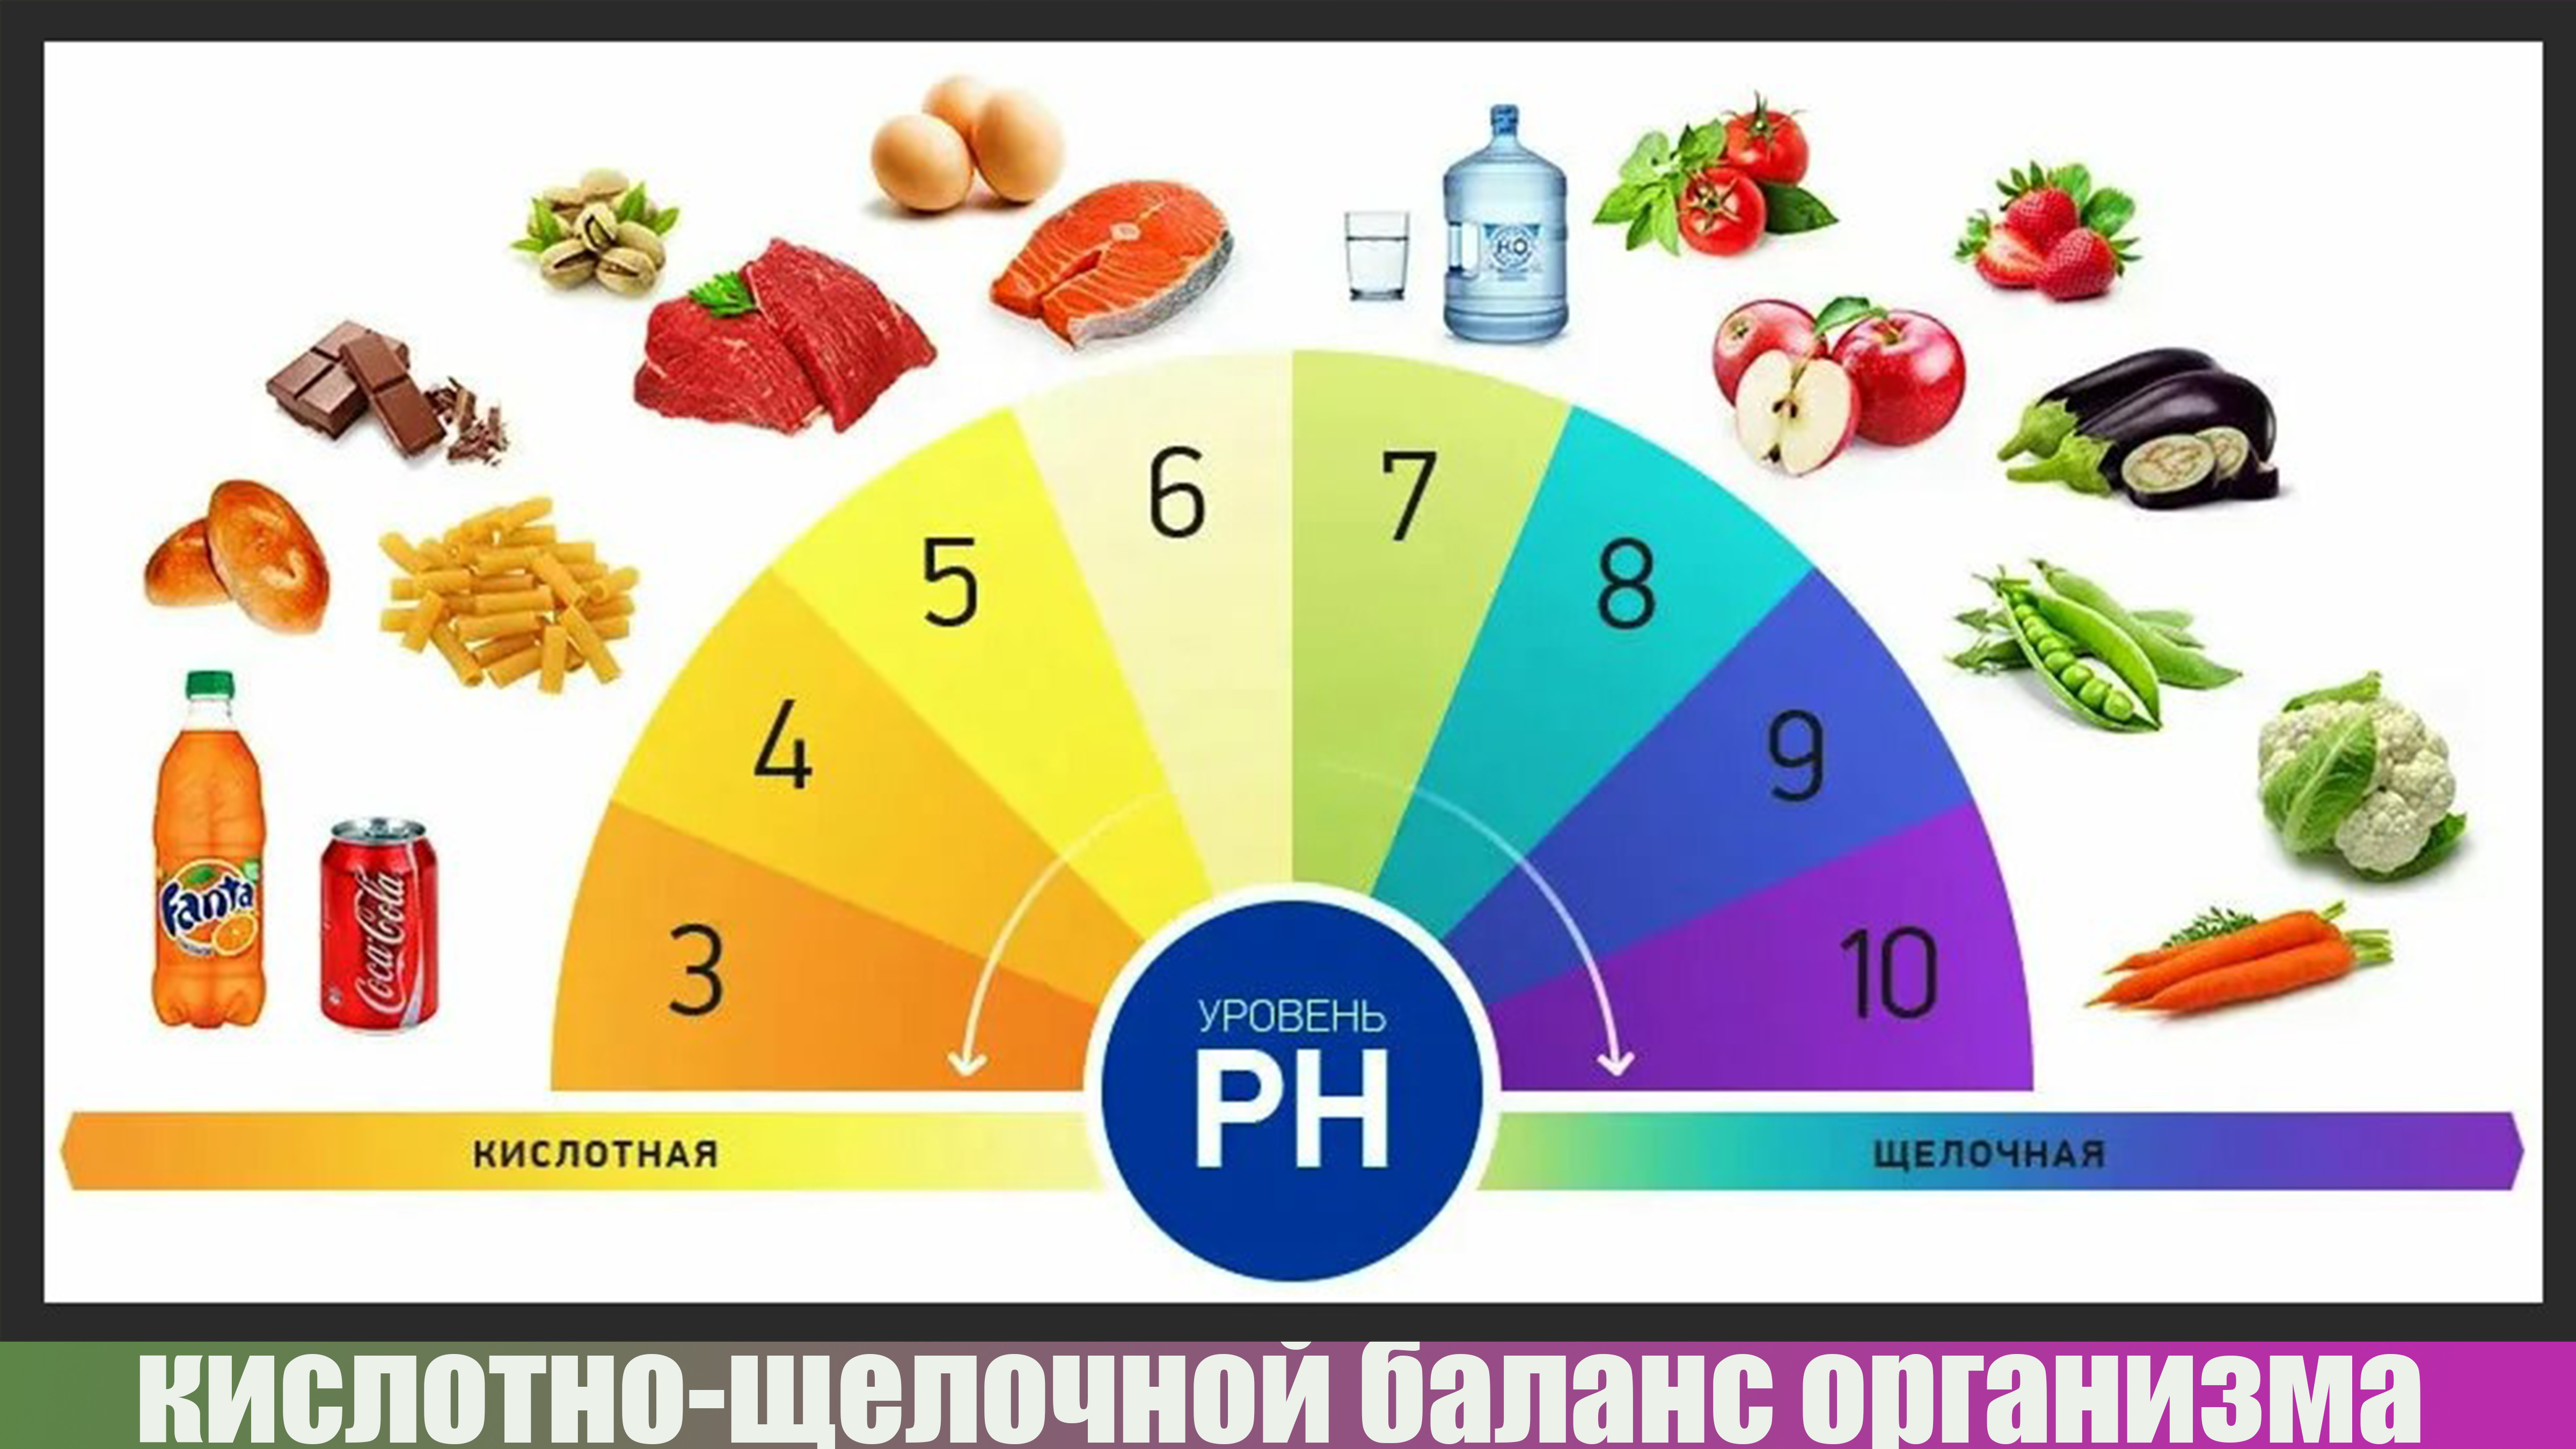  Для здоровья необходима слабощелочная среда с уровнем PH-7,4.